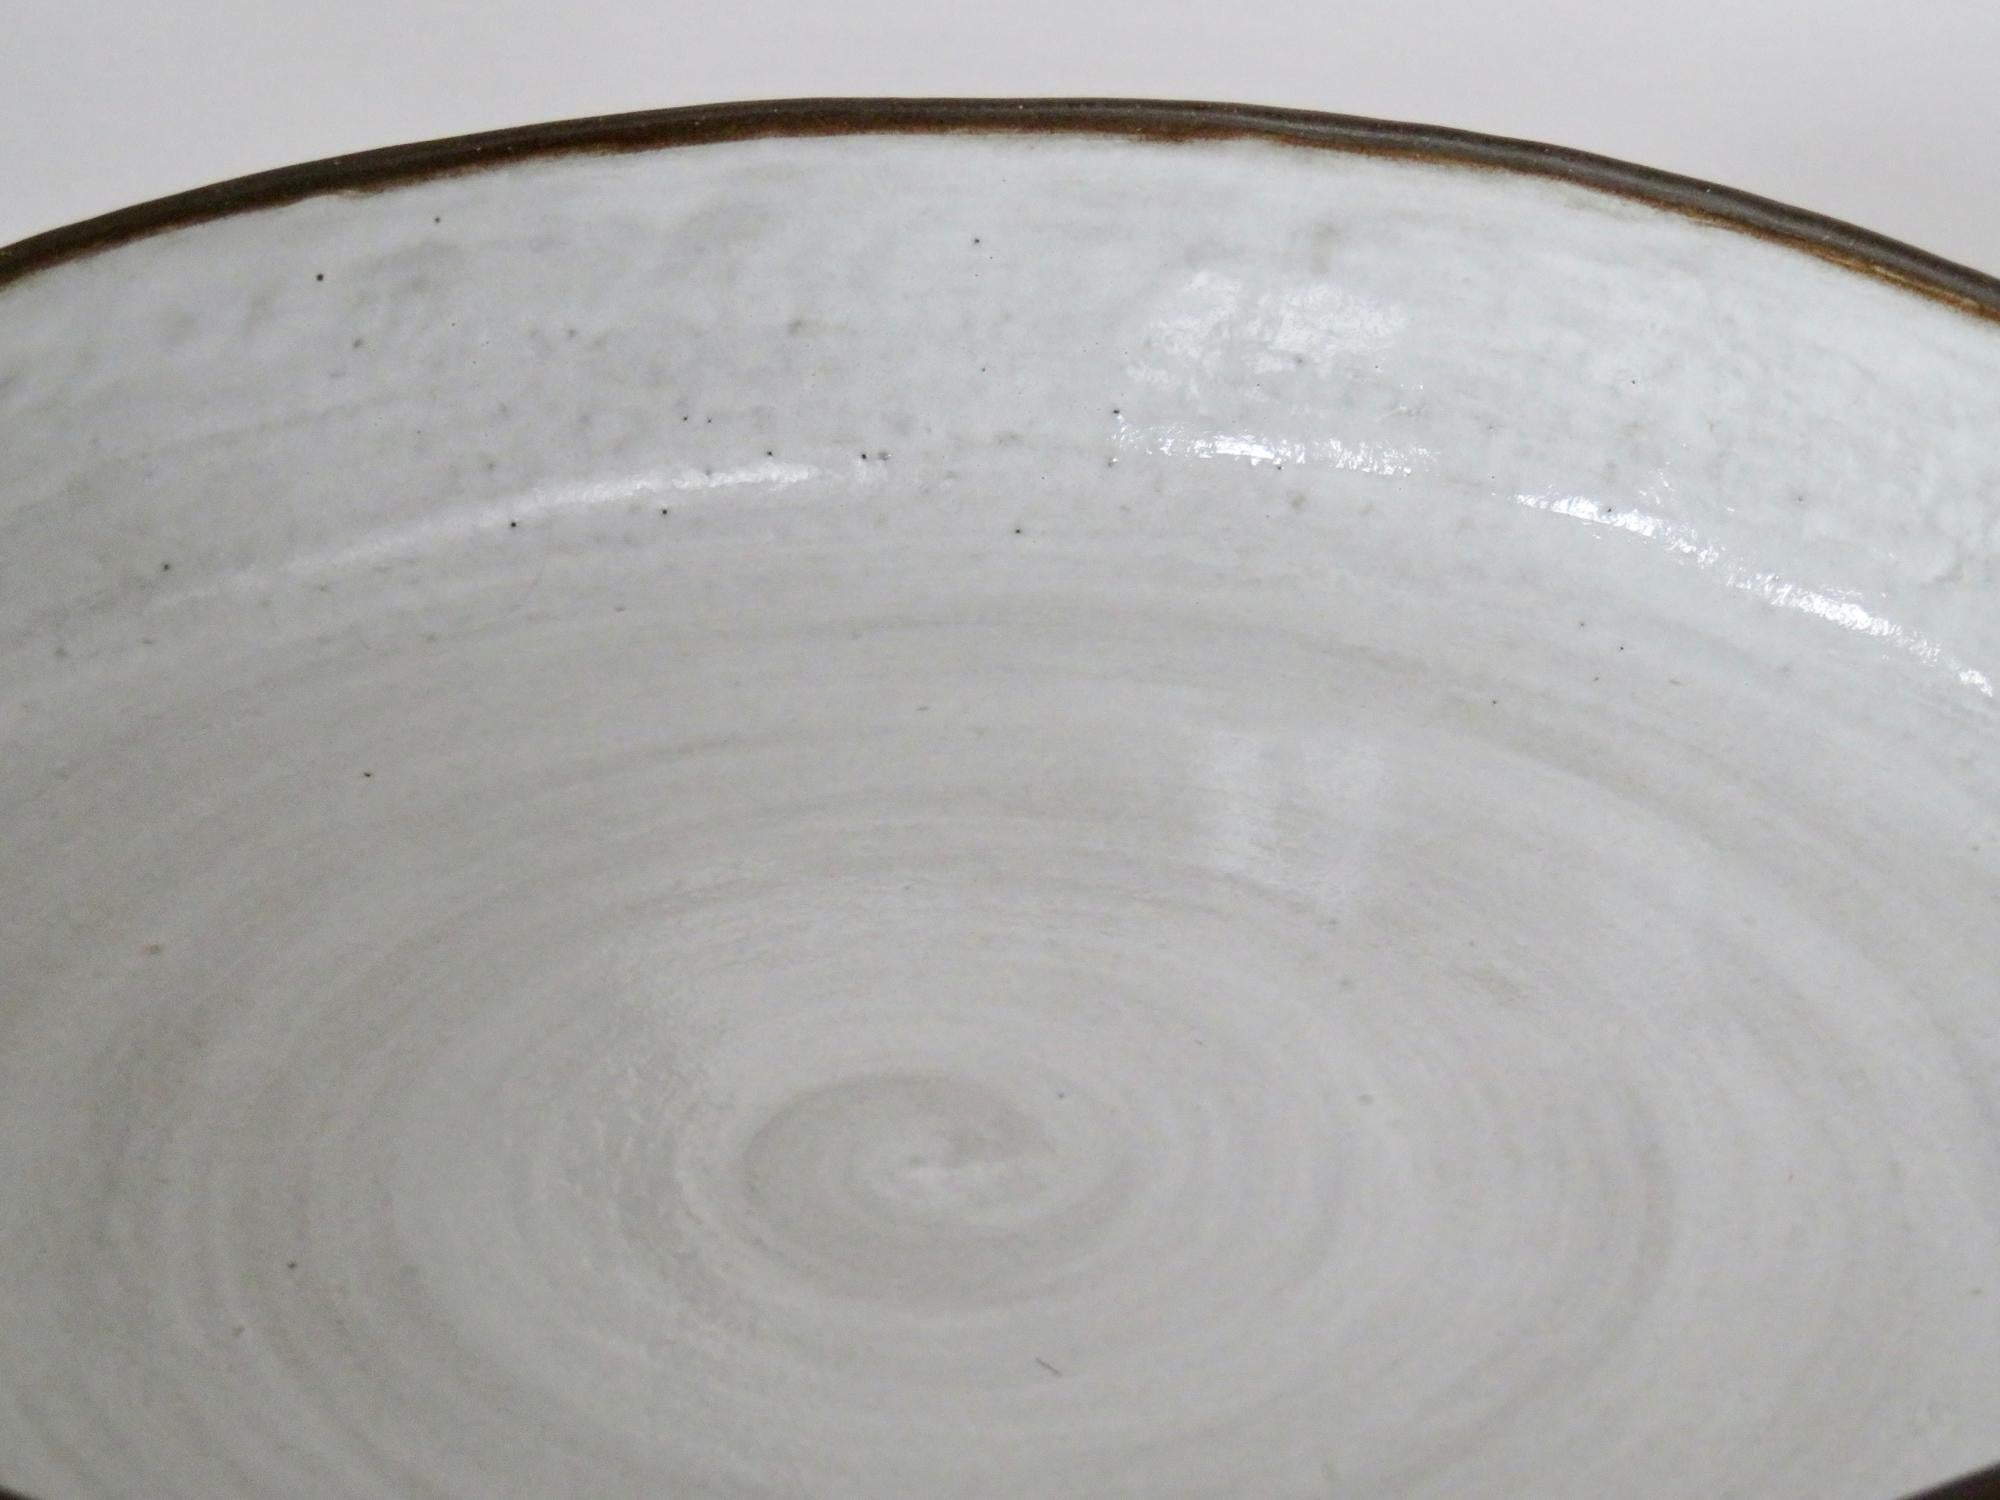 Organic Modern Carved Ceramic Serving Bowl, Dark Brown Clay, White Glaze Interior, Handbuilt